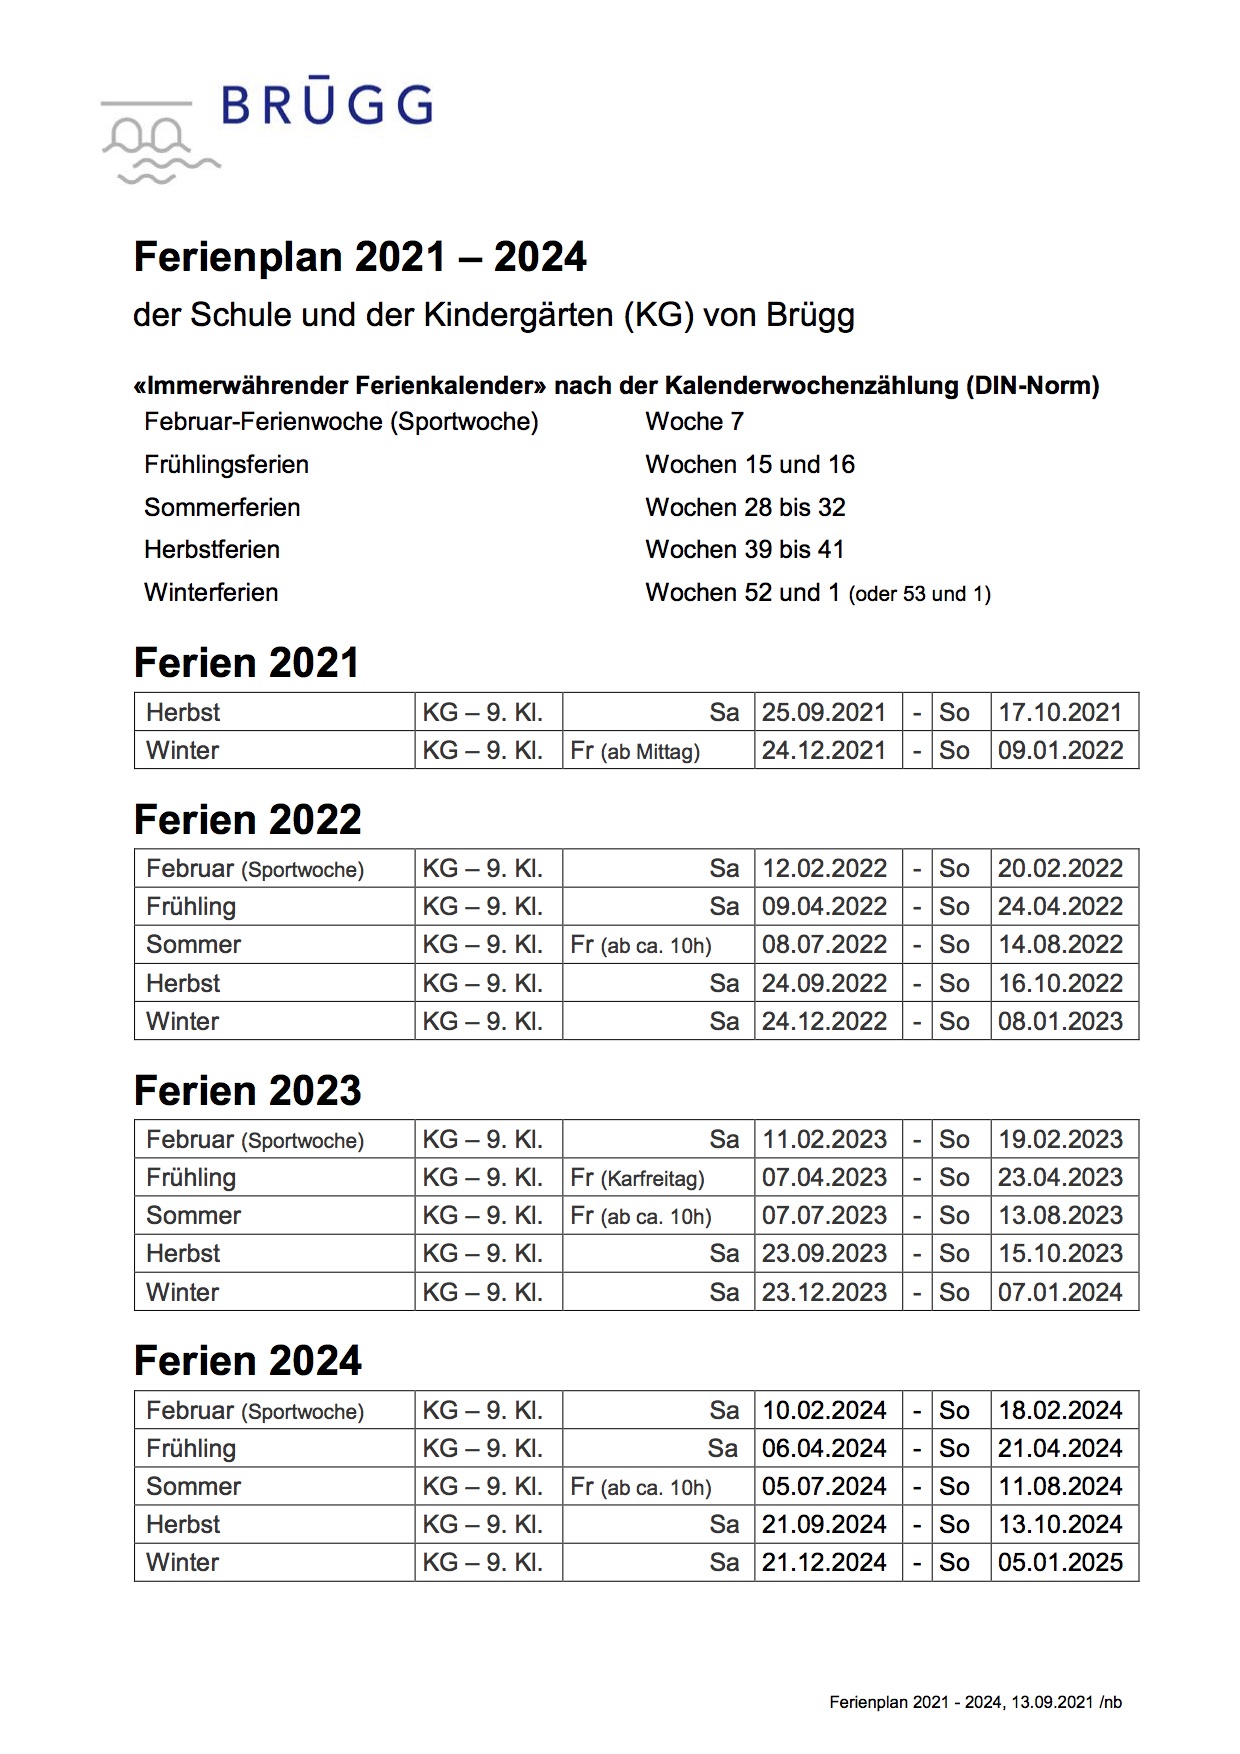 Ferienplan für die Kalenderjahre 2021-2024